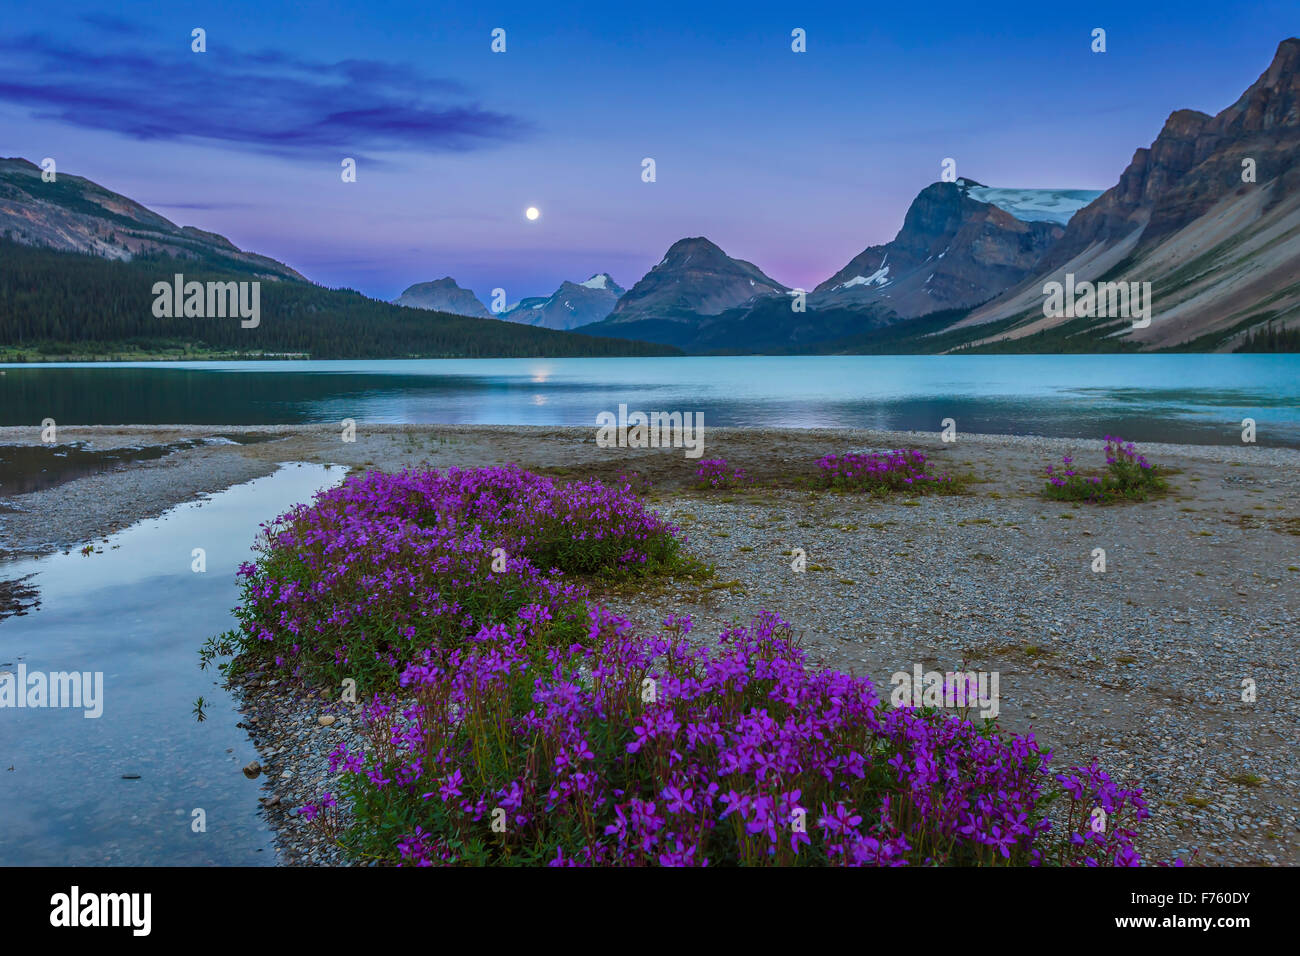 La presque pleine lune (0e jour avant la hausse) complète à la fin du lac Bow, à fleurs violettes (Saxifrage à feuilles opposées ?) dans le foregro Banque D'Images